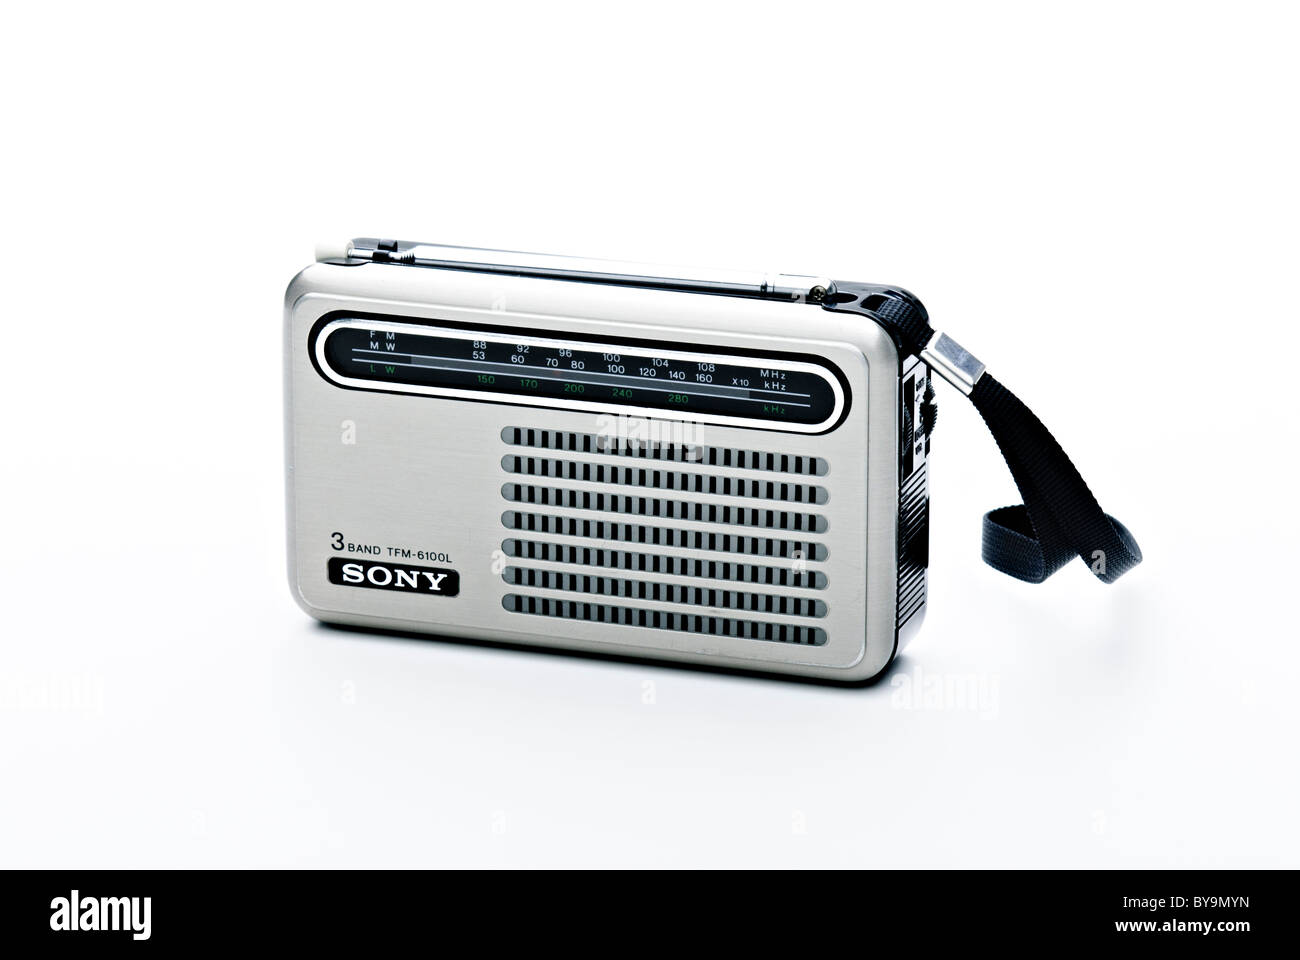 1964 radio Sony TFM-825DL Stock Photo